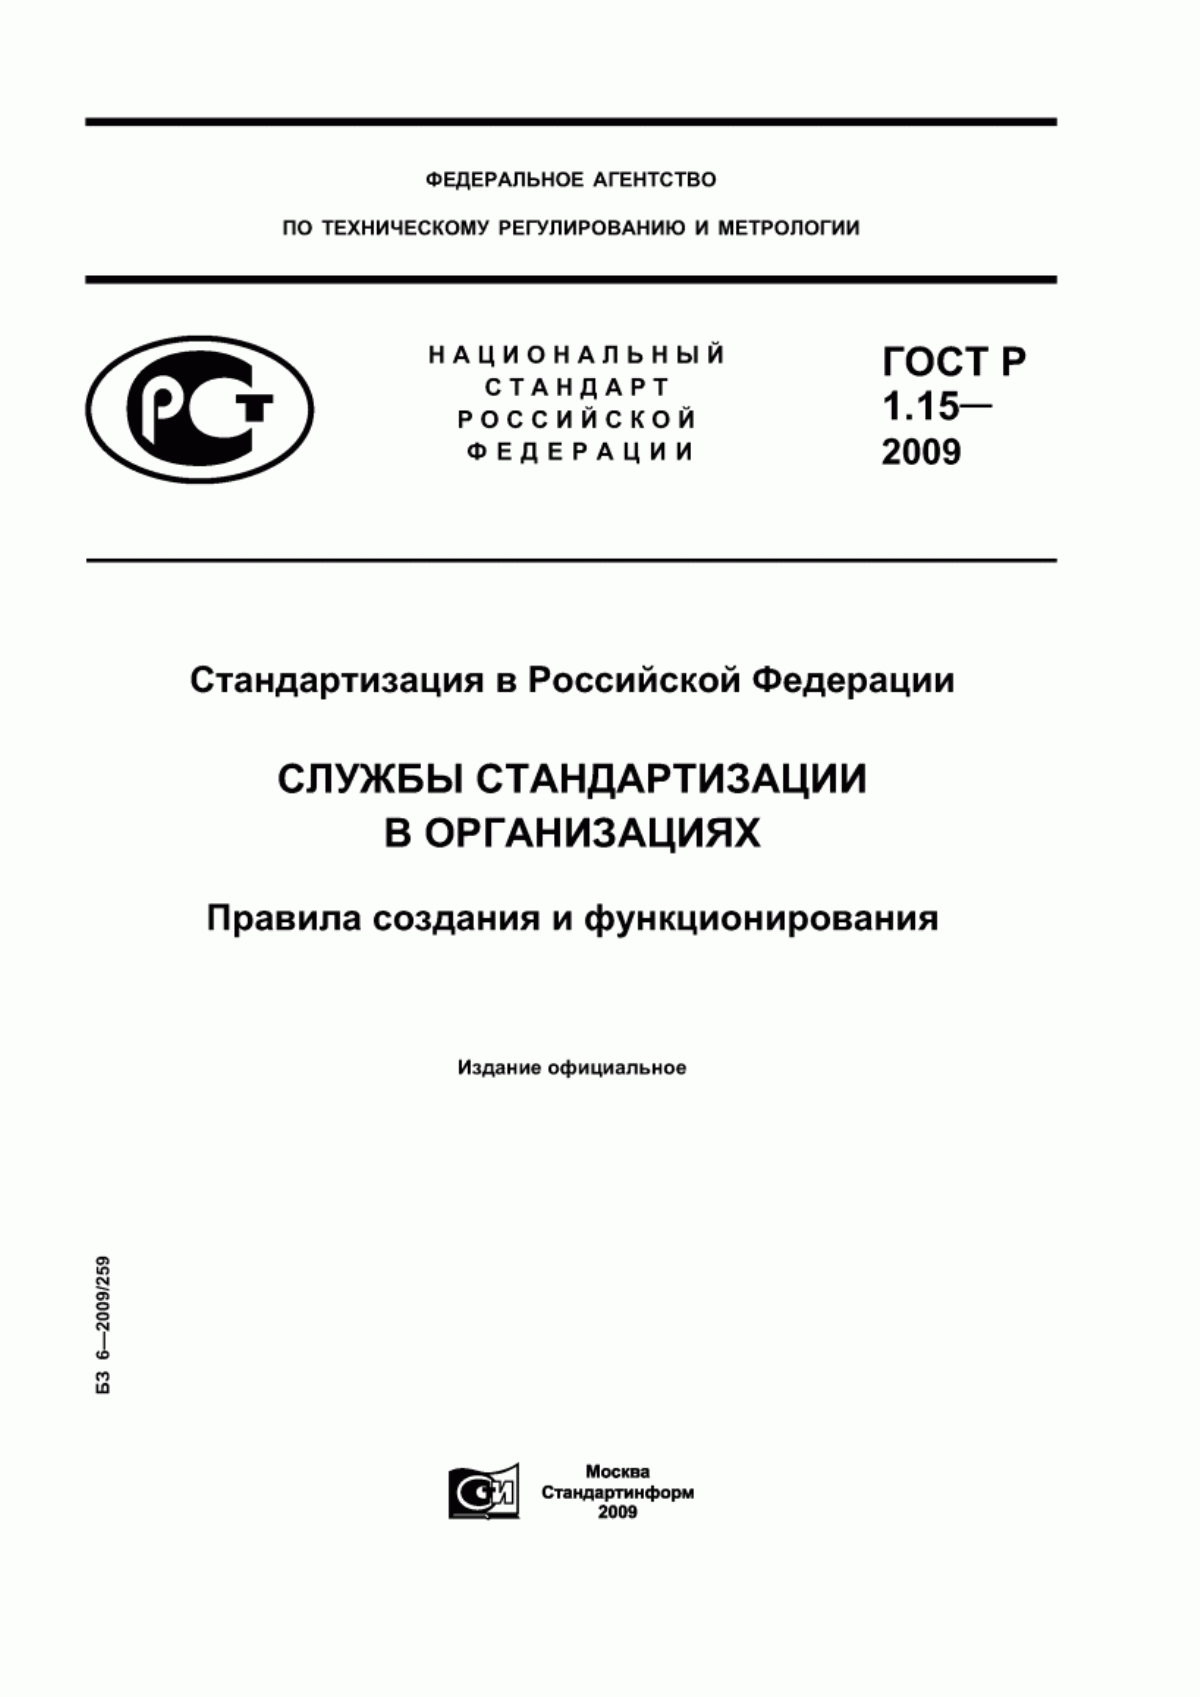 ГОСТ Р 1.15-2009 Стандартизация в Российской Федерации. Службы стандартизации в организациях. Правила создания и функционирования